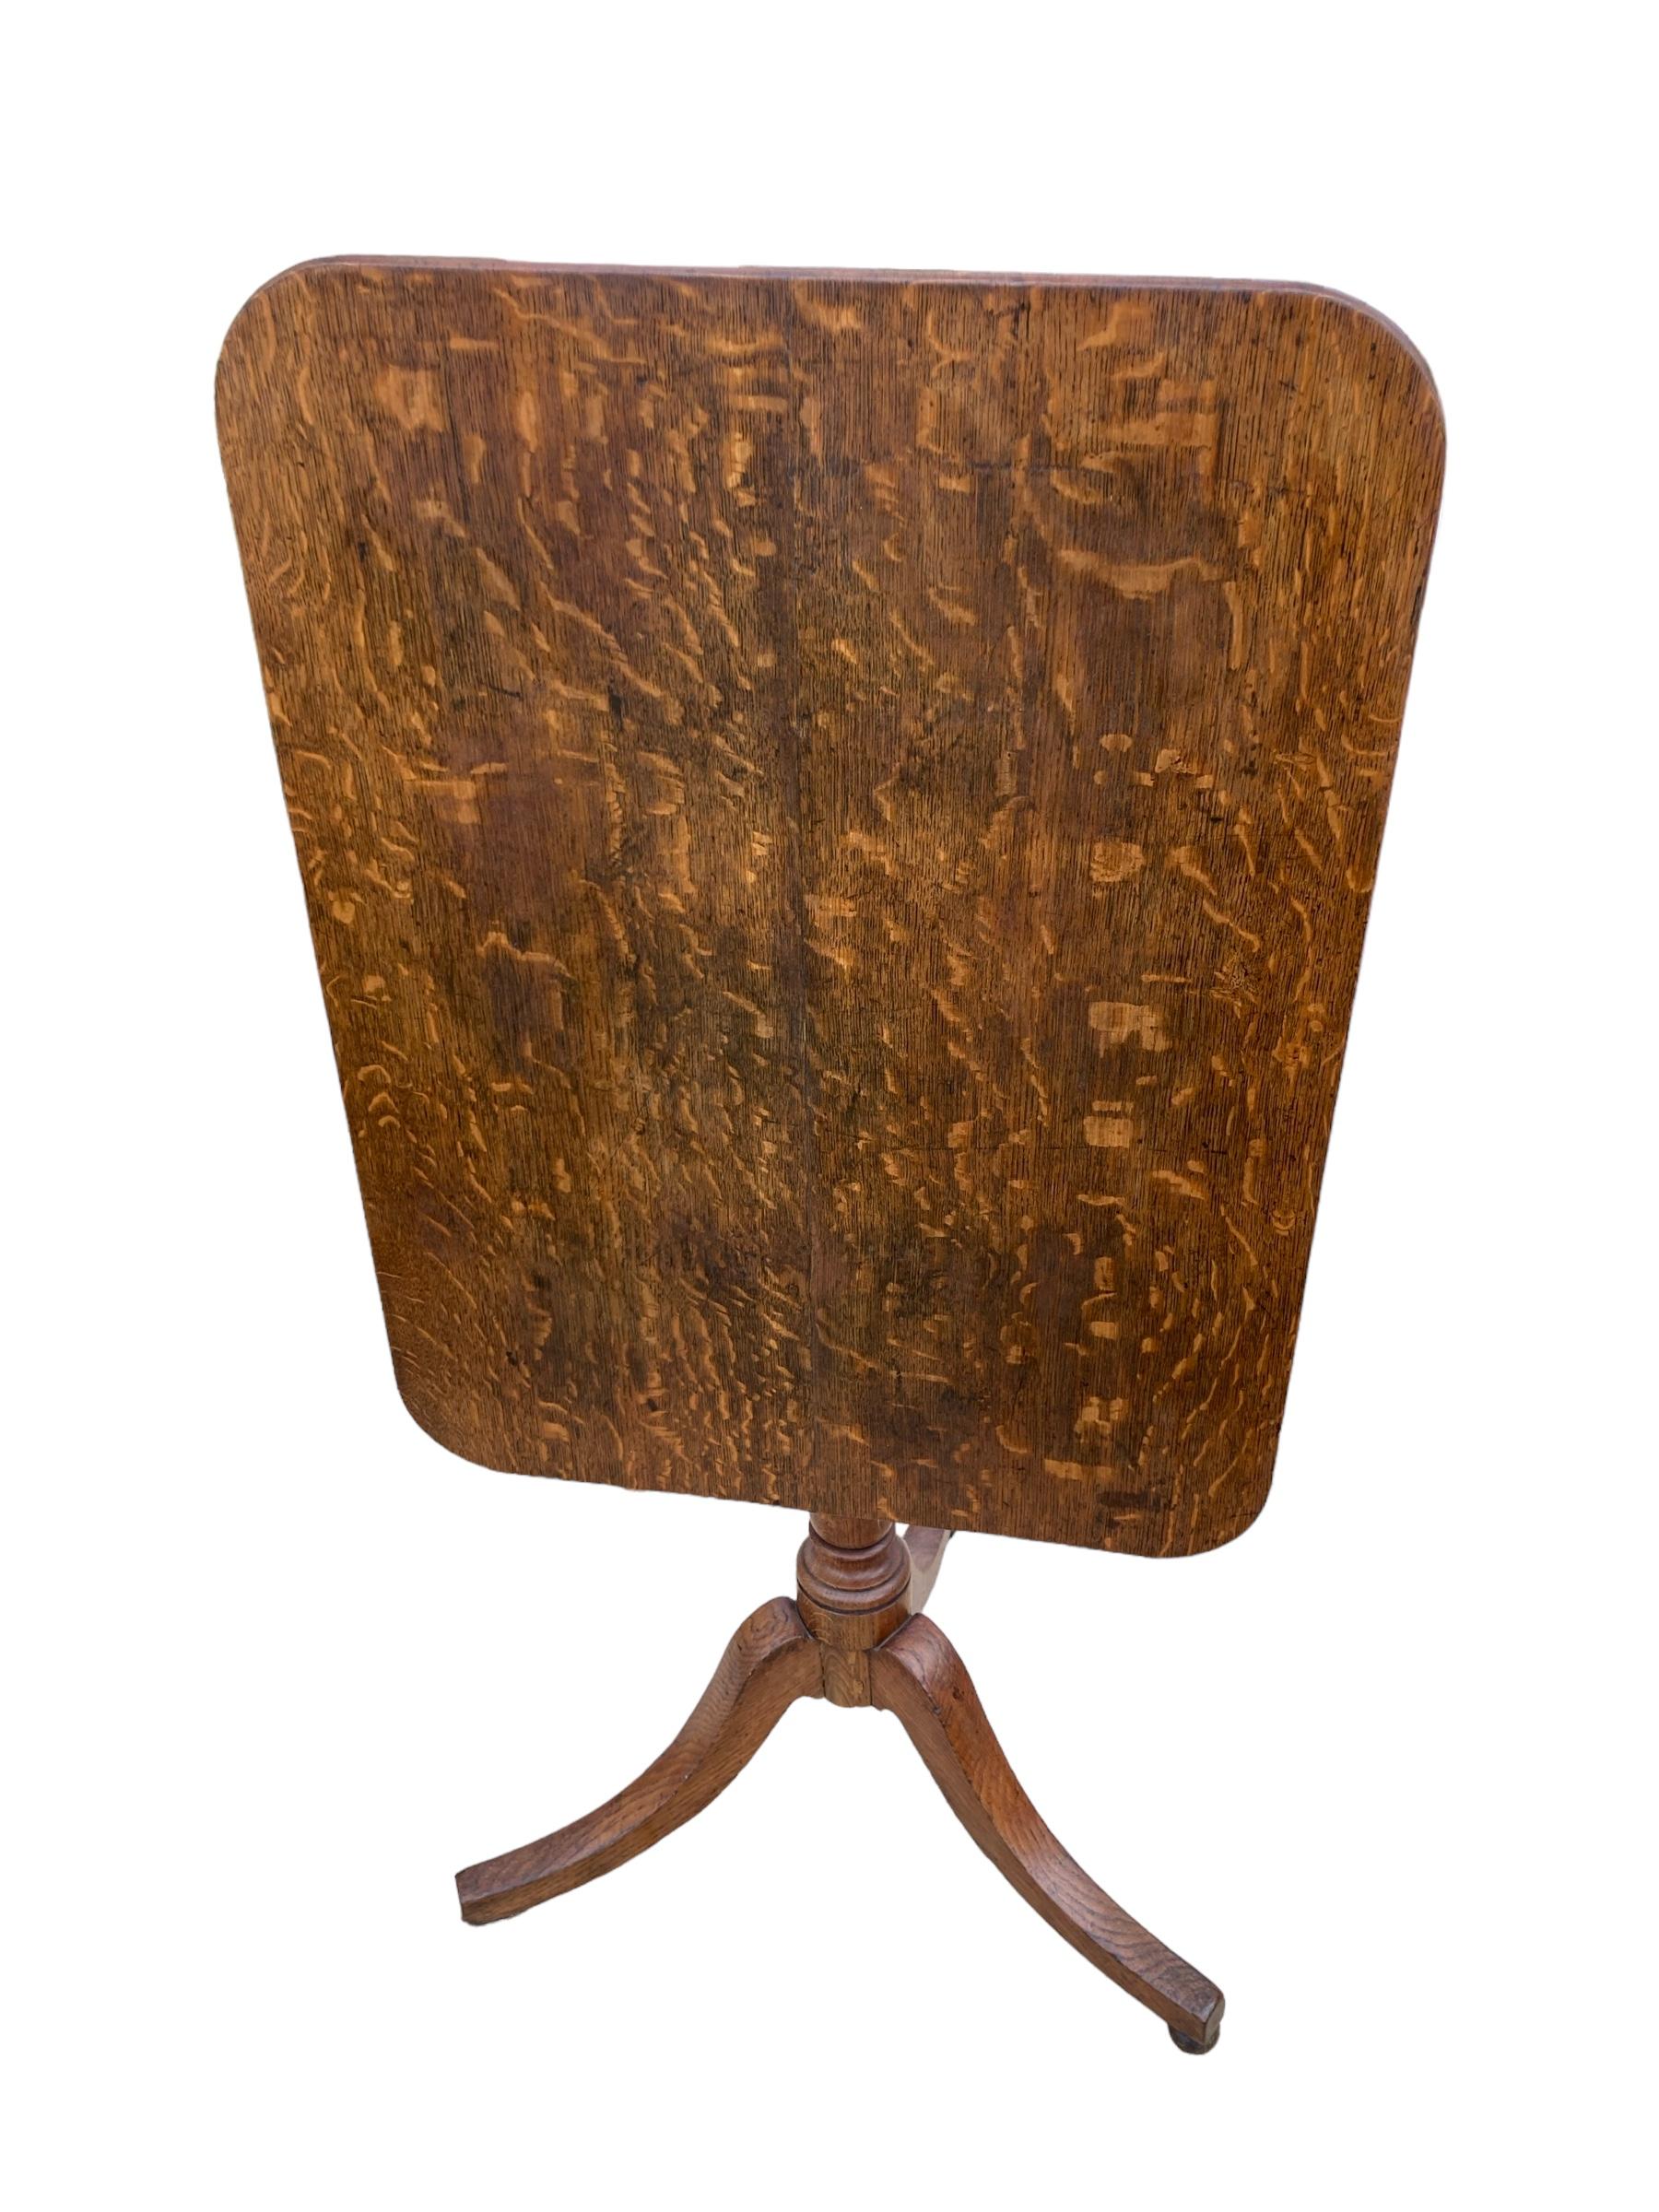 Ein Original 19. Jahrhundert Englisch Eiche Rectangular Tri Legged Tilt-Top-Tisch. Wunderschön gearbeitete Holzplatte, die jedem Raum einen Hauch von Eleganz verleiht. Die ausgefeilten Details und die robuste Konstruktion machen ihn zu einem